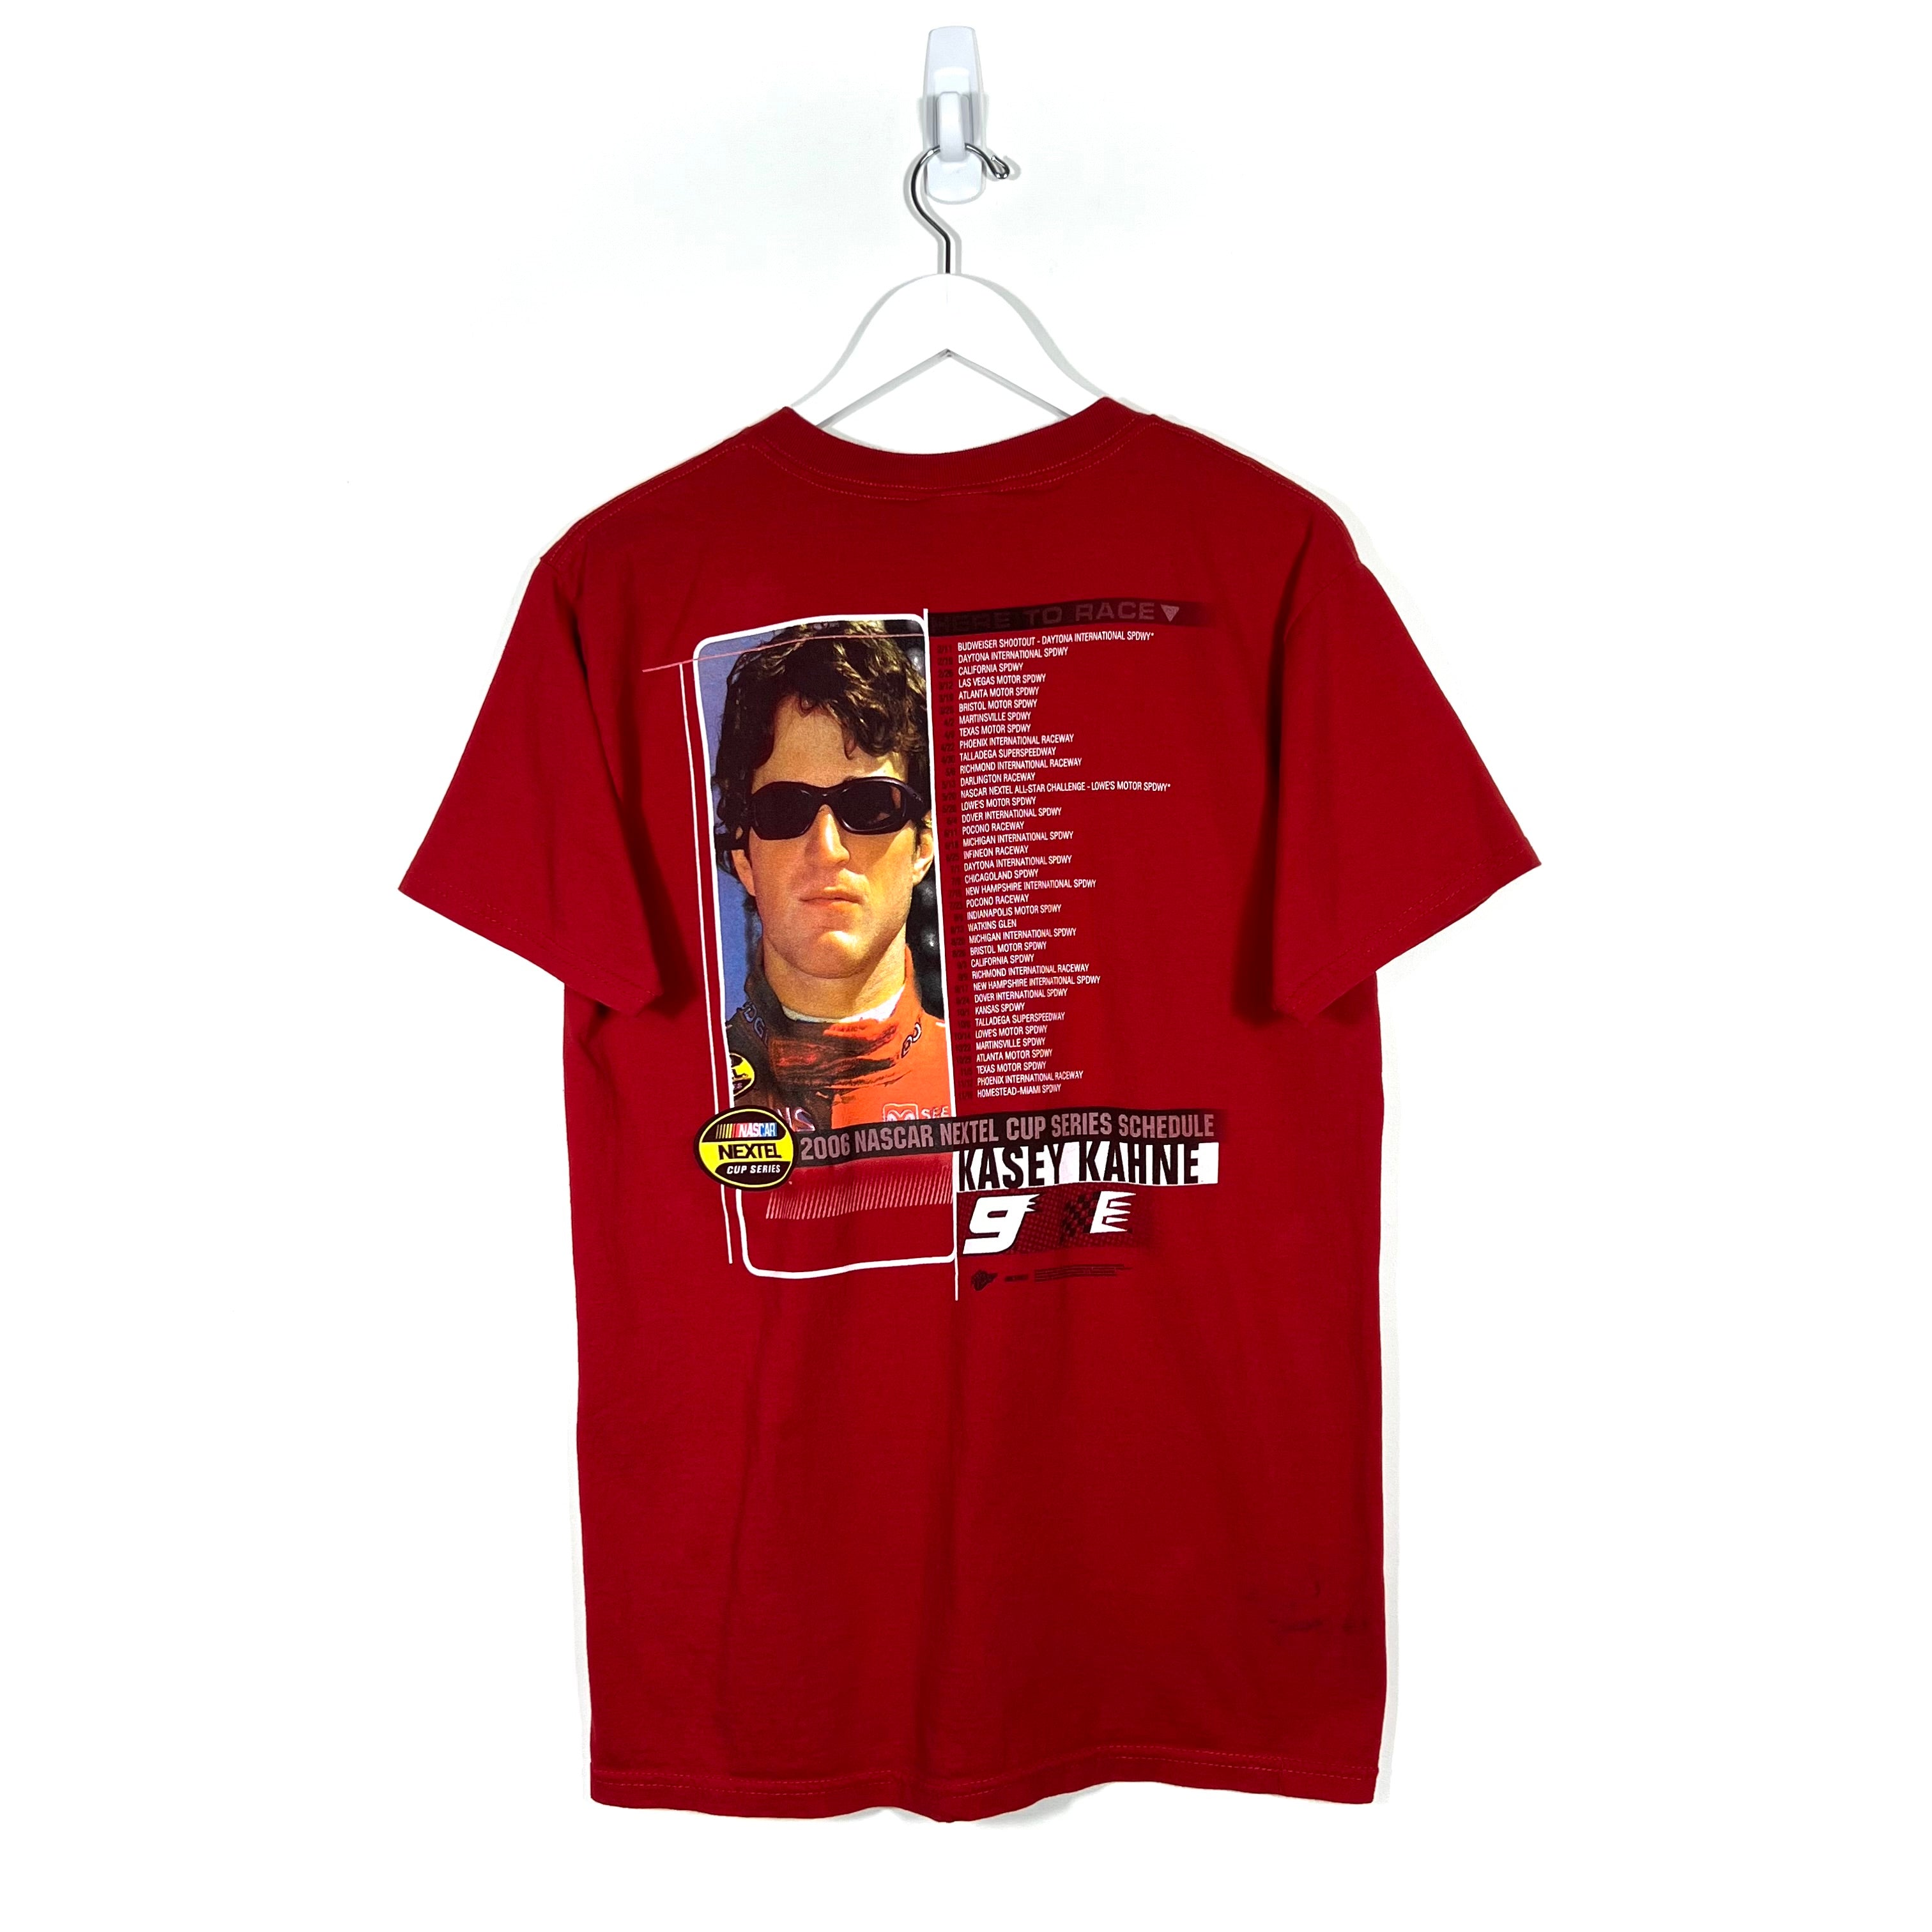 2006 Nascar Kasey Kahne T-Shirt - Men's Medium